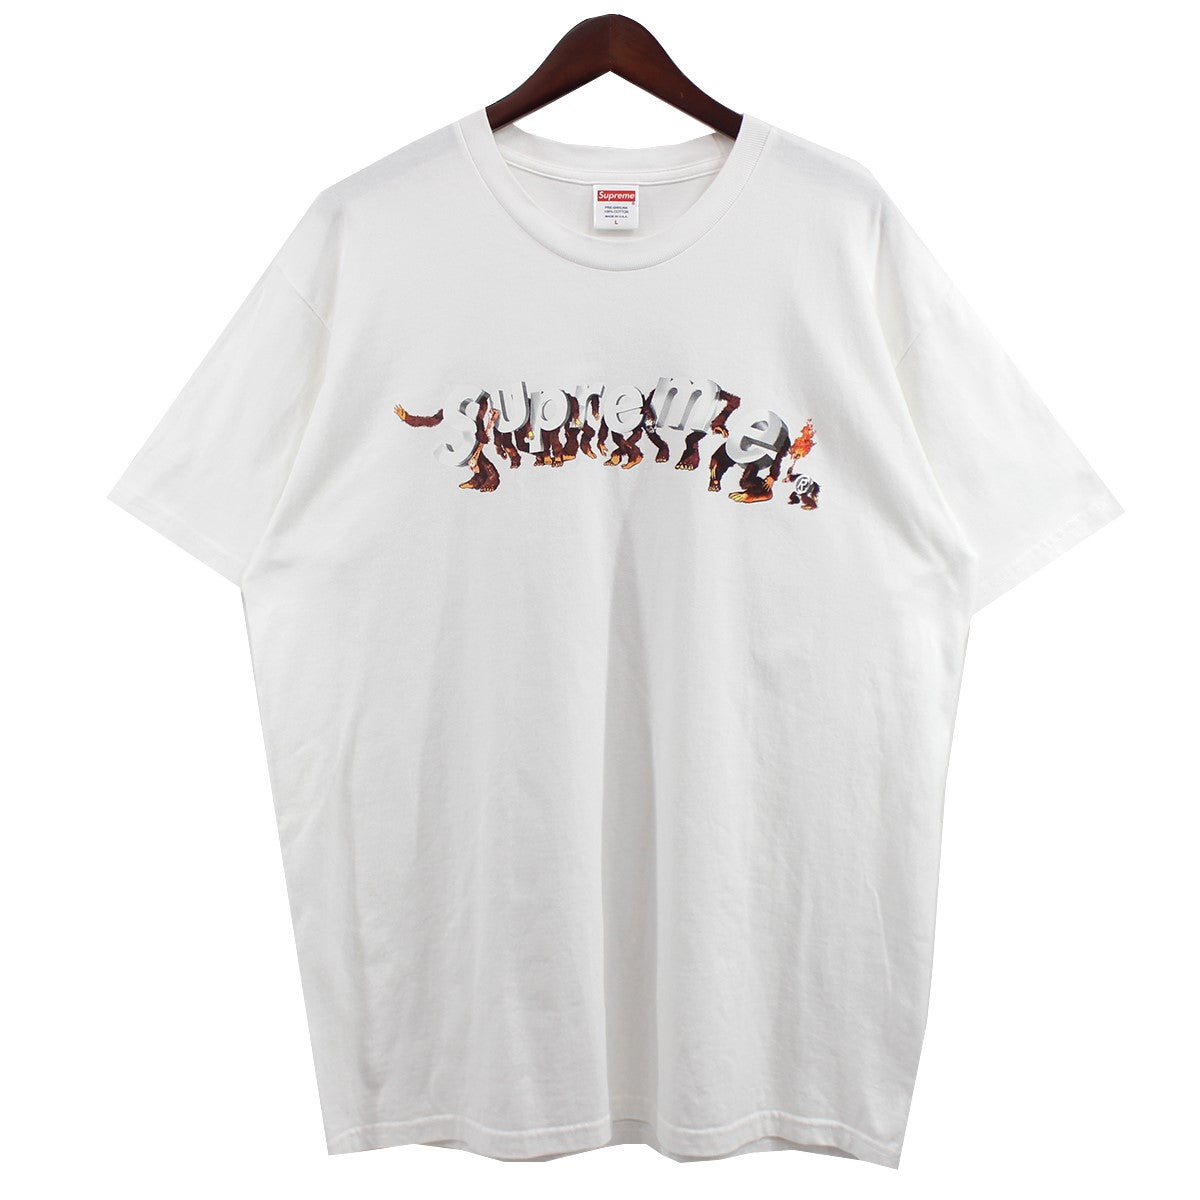 【激レア】シュプリーム☆エイプスロゴ Tシャツ入金困難XLブラック米国製Spreme一覧はコチラです♪